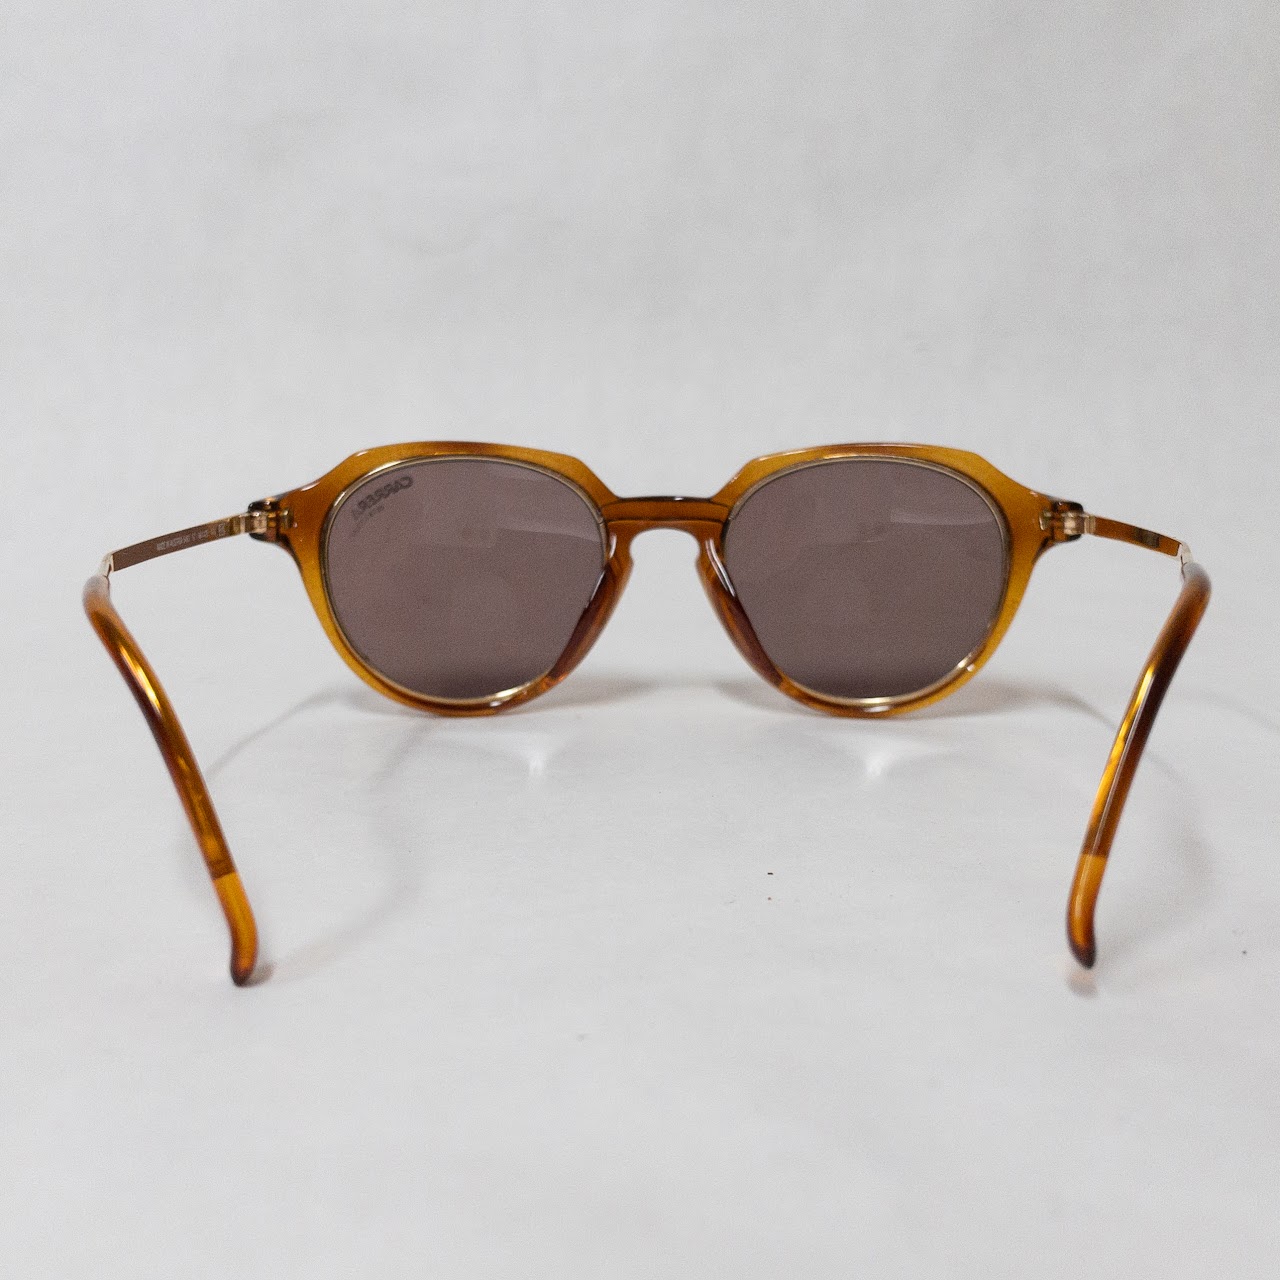 Carrera Vintage 'Tortoise' Sunglasses